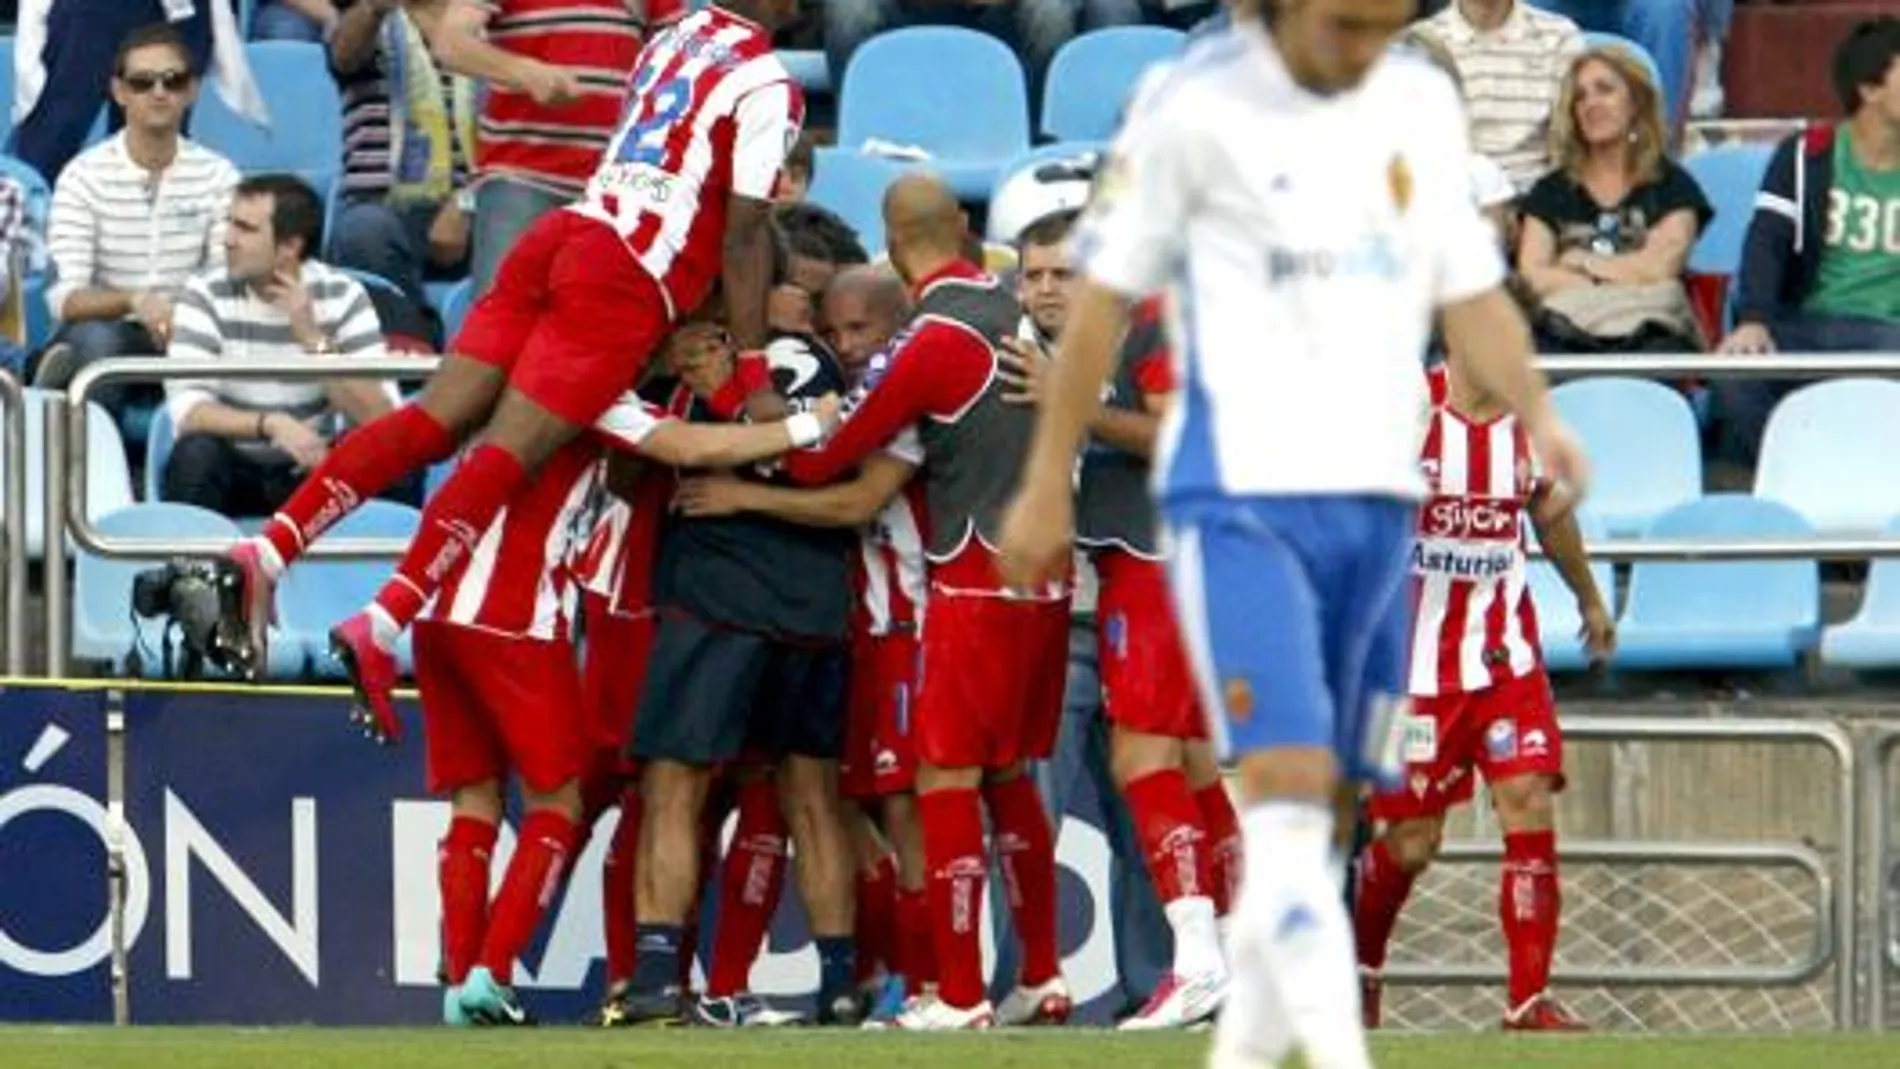 Los jugadores del Sporting de Gijón (al fondo) celebran su segundo gol, materializado por el delantero Diego Castro